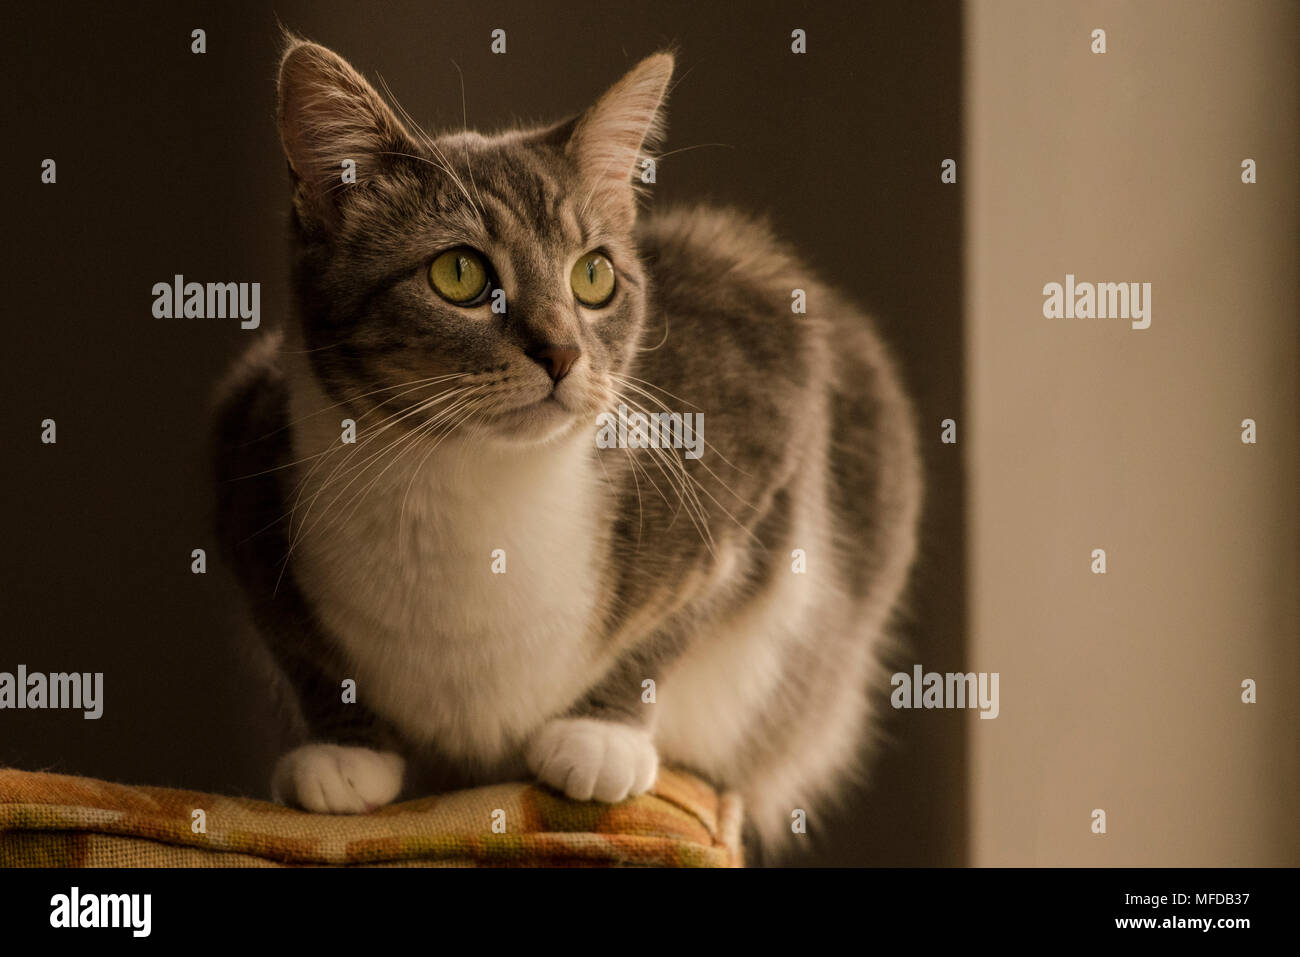 Eine inländische tabby Katze, eine verwöhnte indoor Cat, Lounges und sich um das Haus herum. Stockfoto